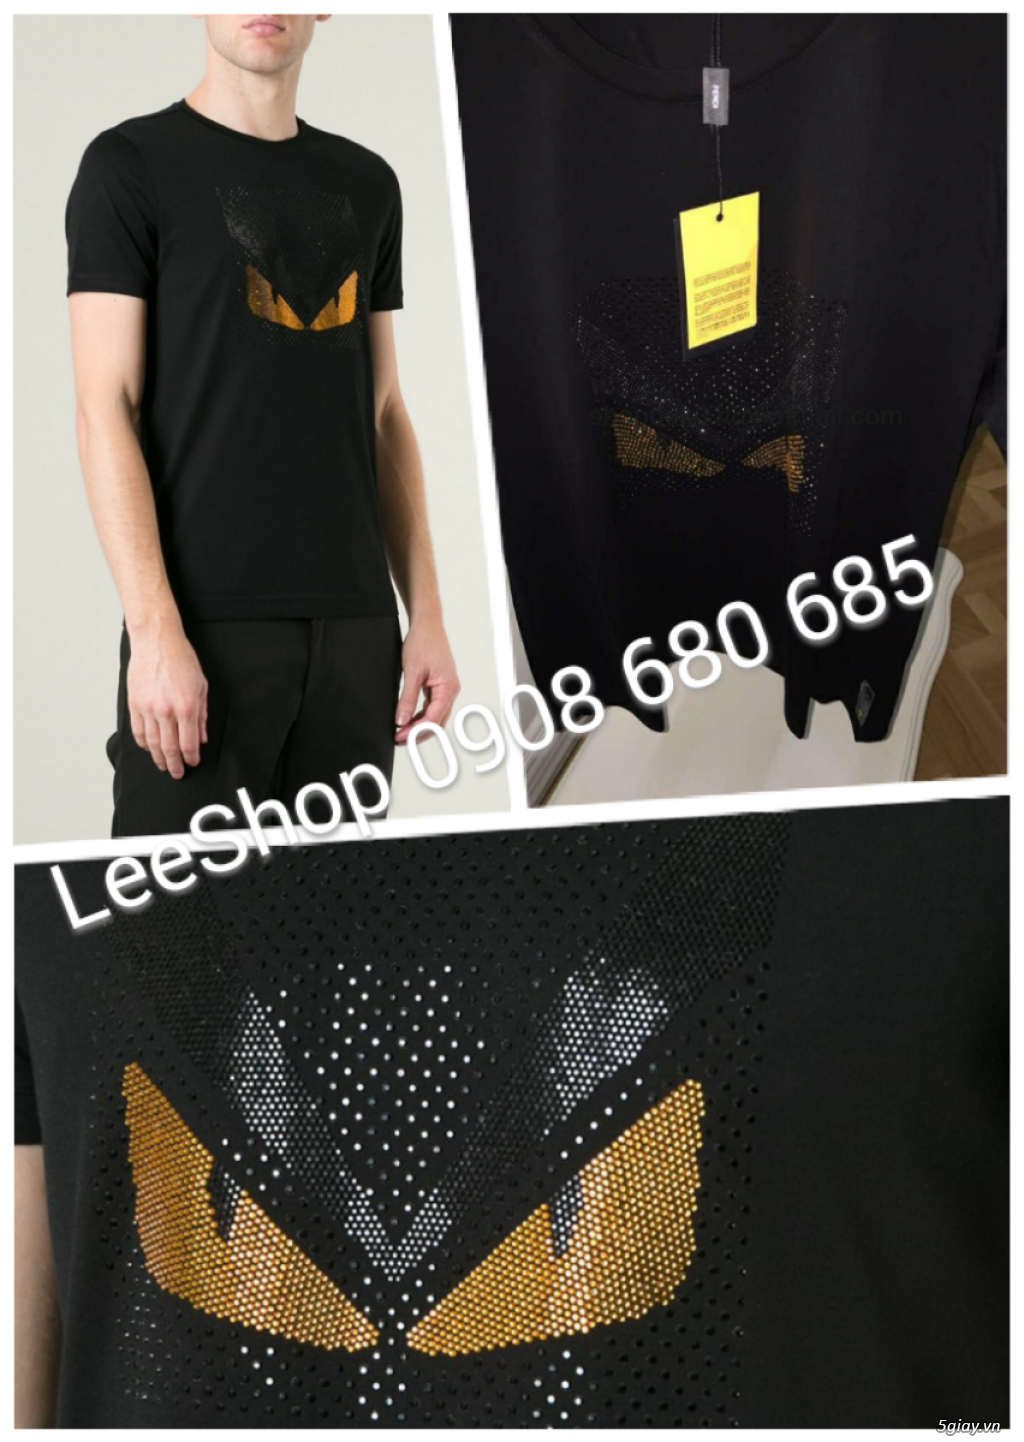 LeeShop_Chuyên quần áo thời trang - 45